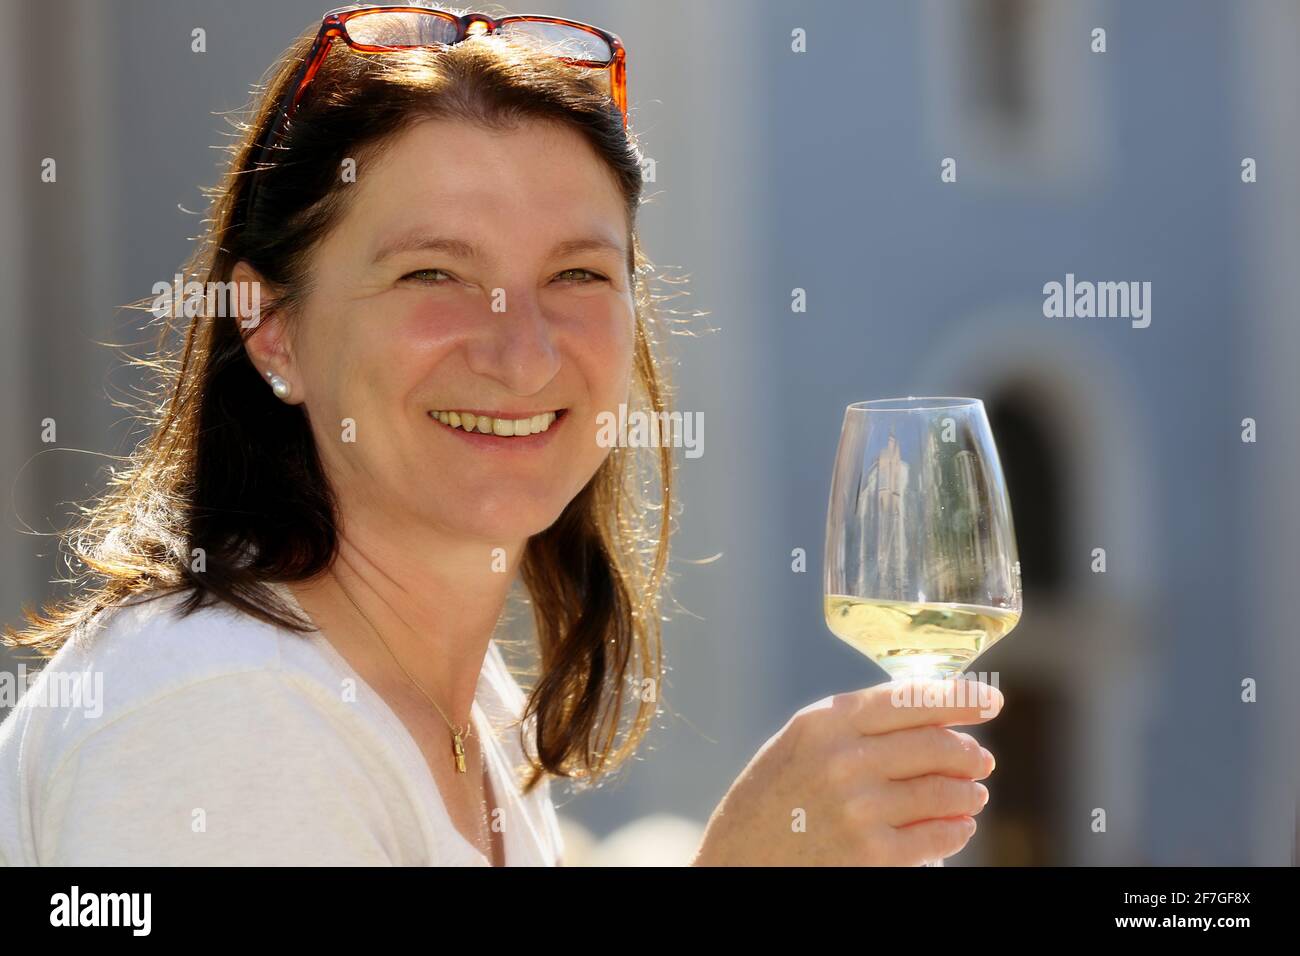 Trachtenfest, Weinfest, Meran, schöne bezaubernde Frau trinkt ihren Wein beim Trachtenumzug und Weinfest in Meran in Südtirol, Dolomiten, Italien Stock Photo